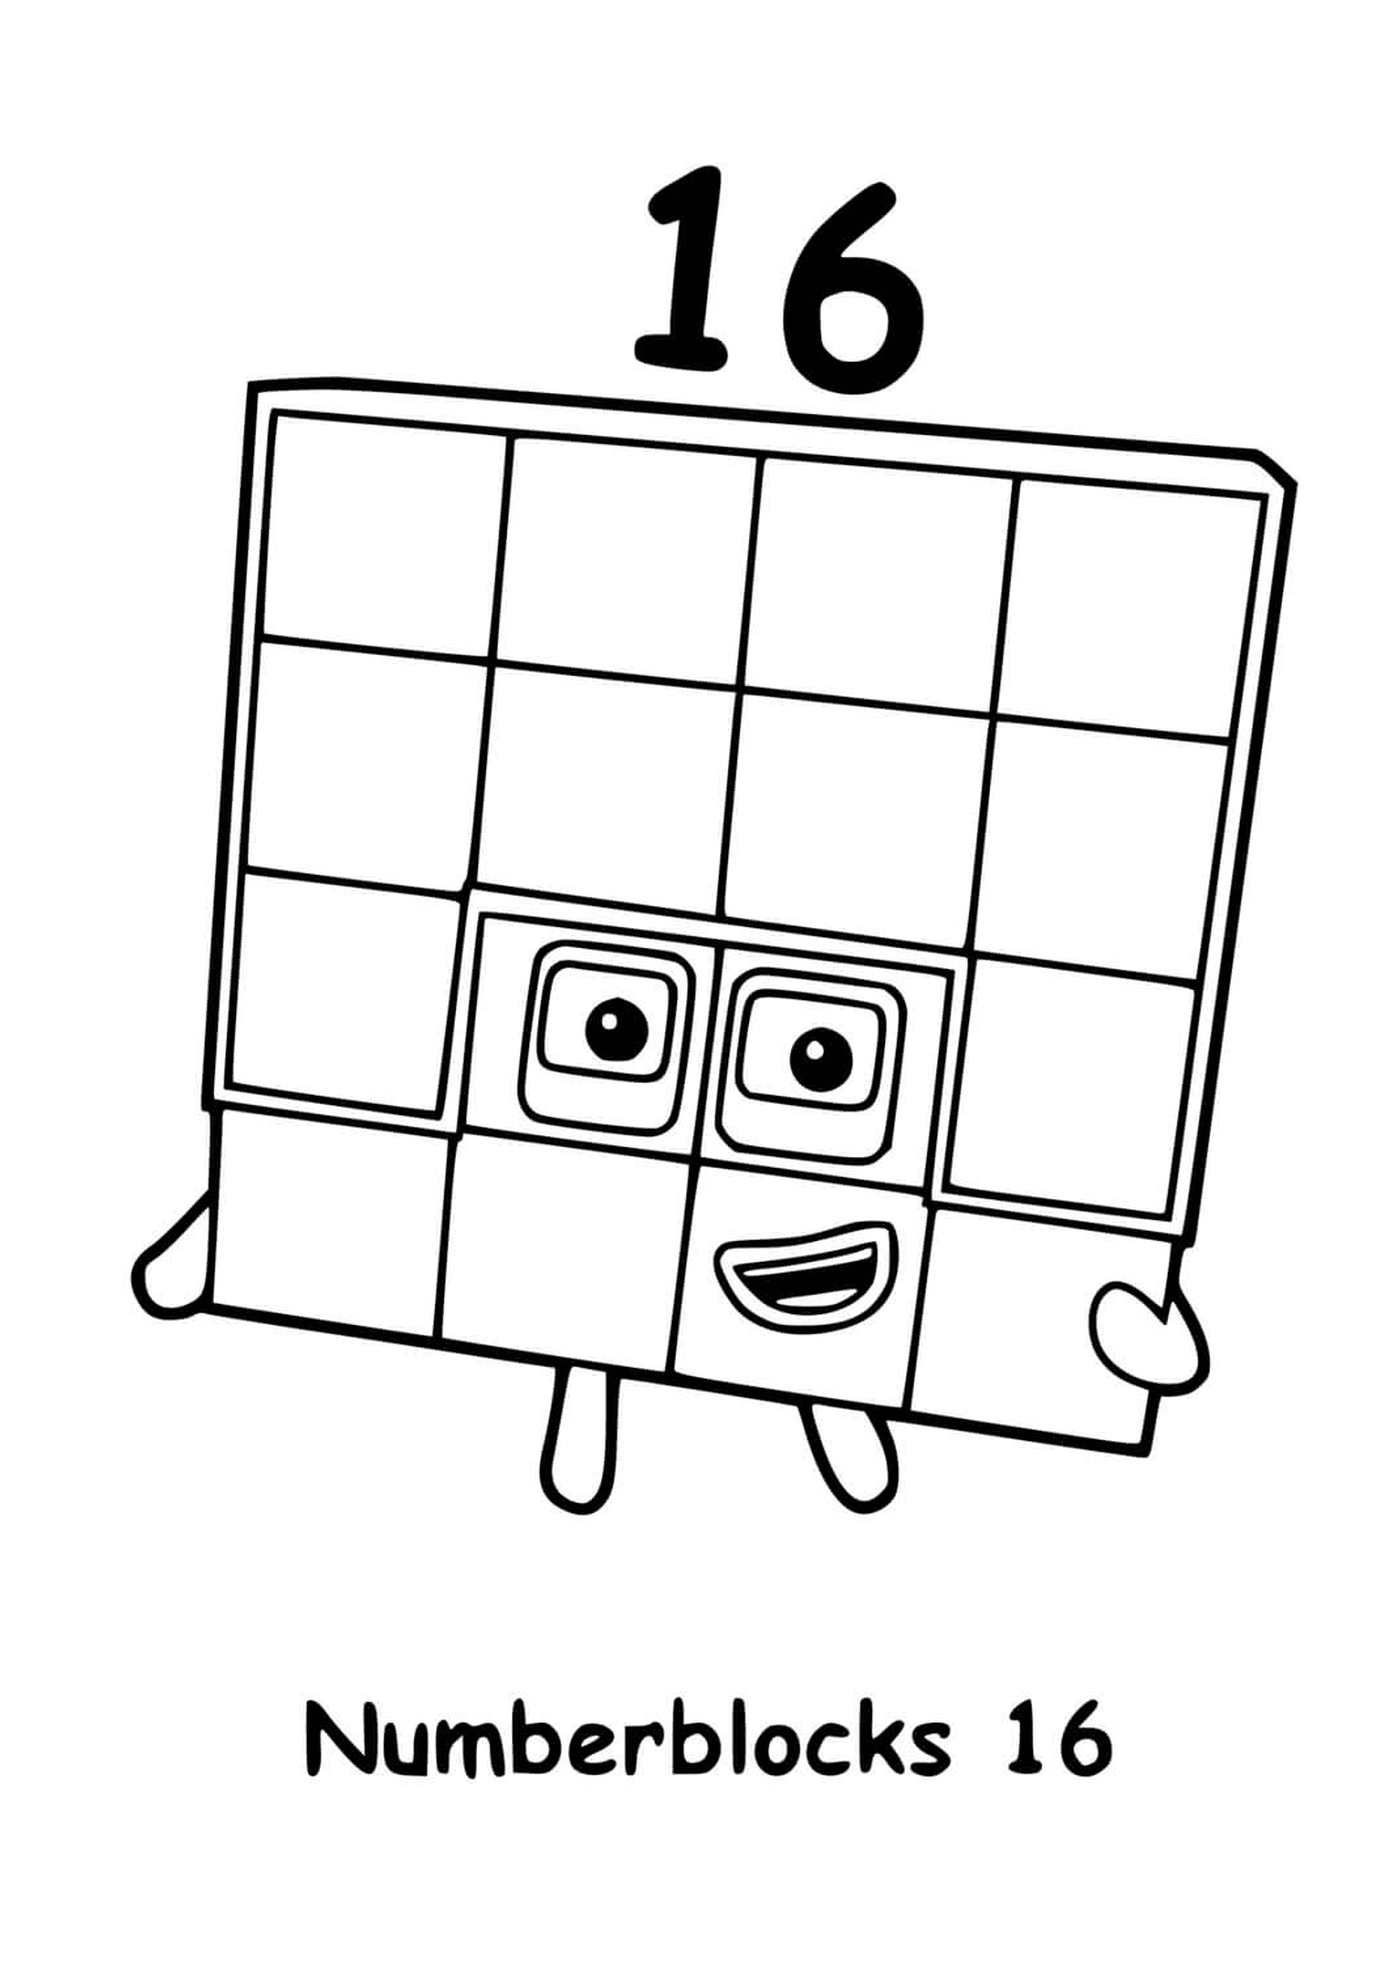   Numéro 16 des Numberblocks, carré avec des carrés 